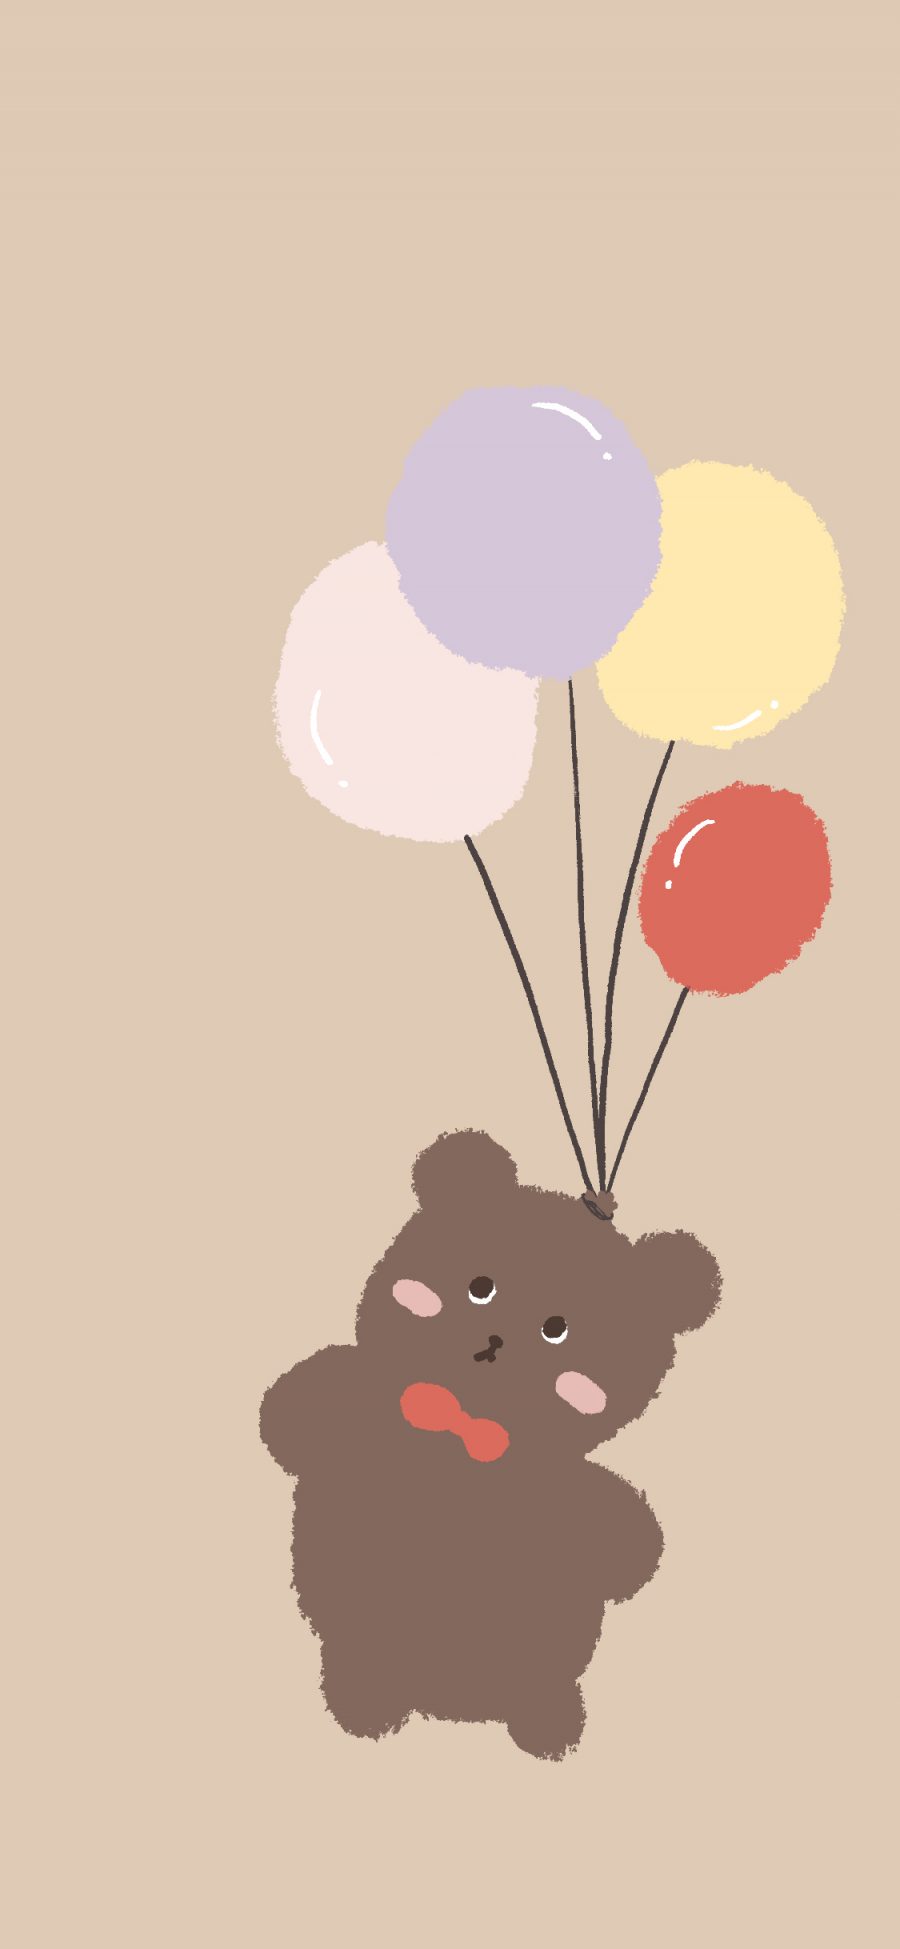 [2436×1125]可爱 气球 小熊 卡通 苹果手机动漫壁纸图片